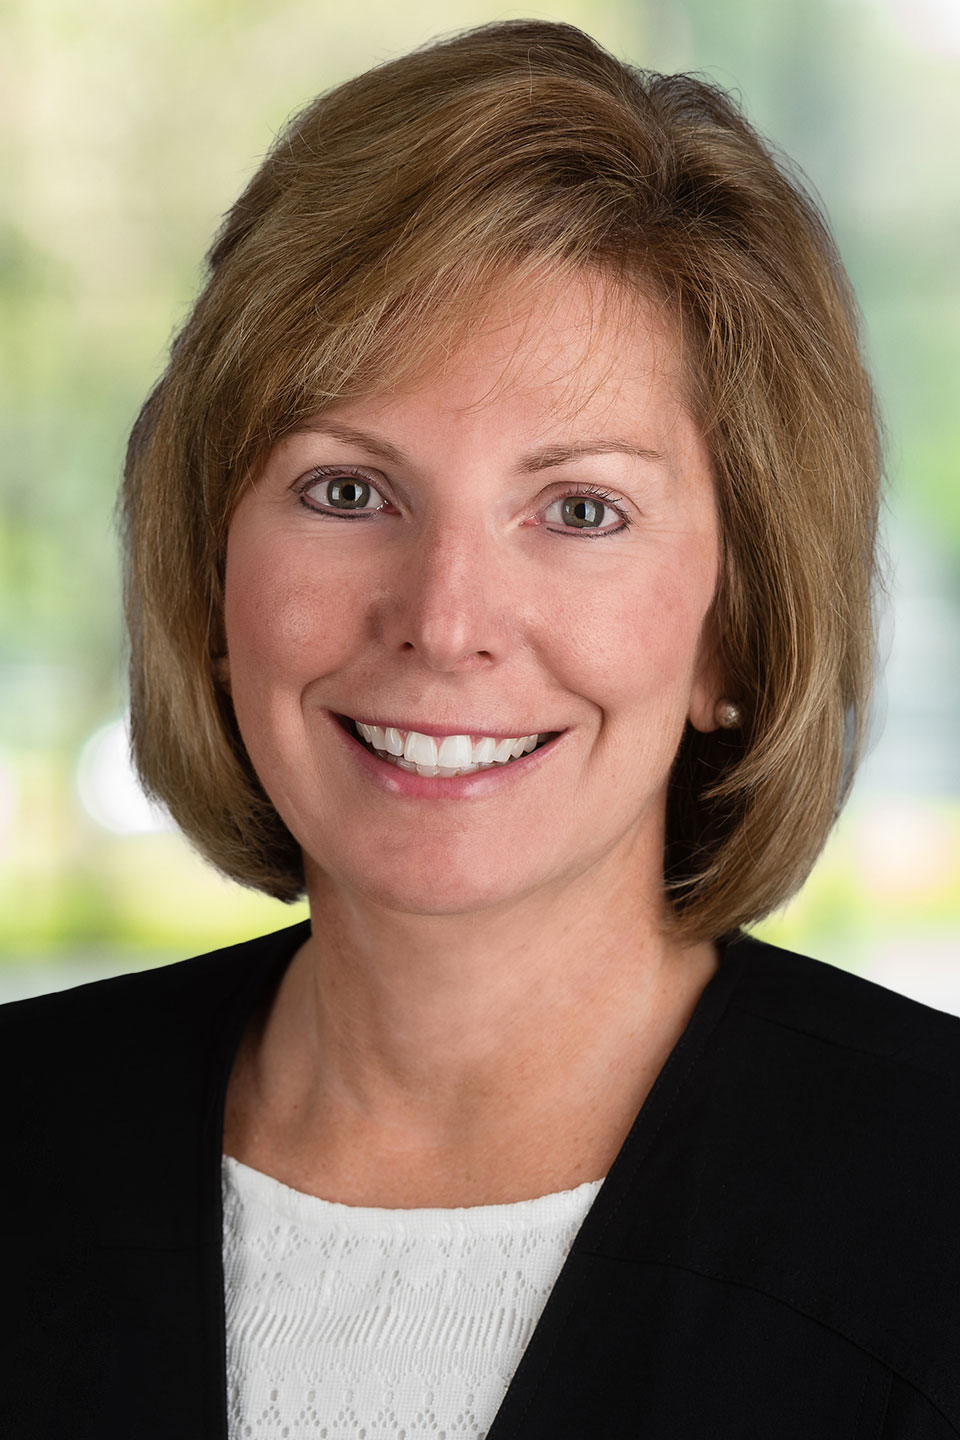 Linda Fallon, Executive Vice President